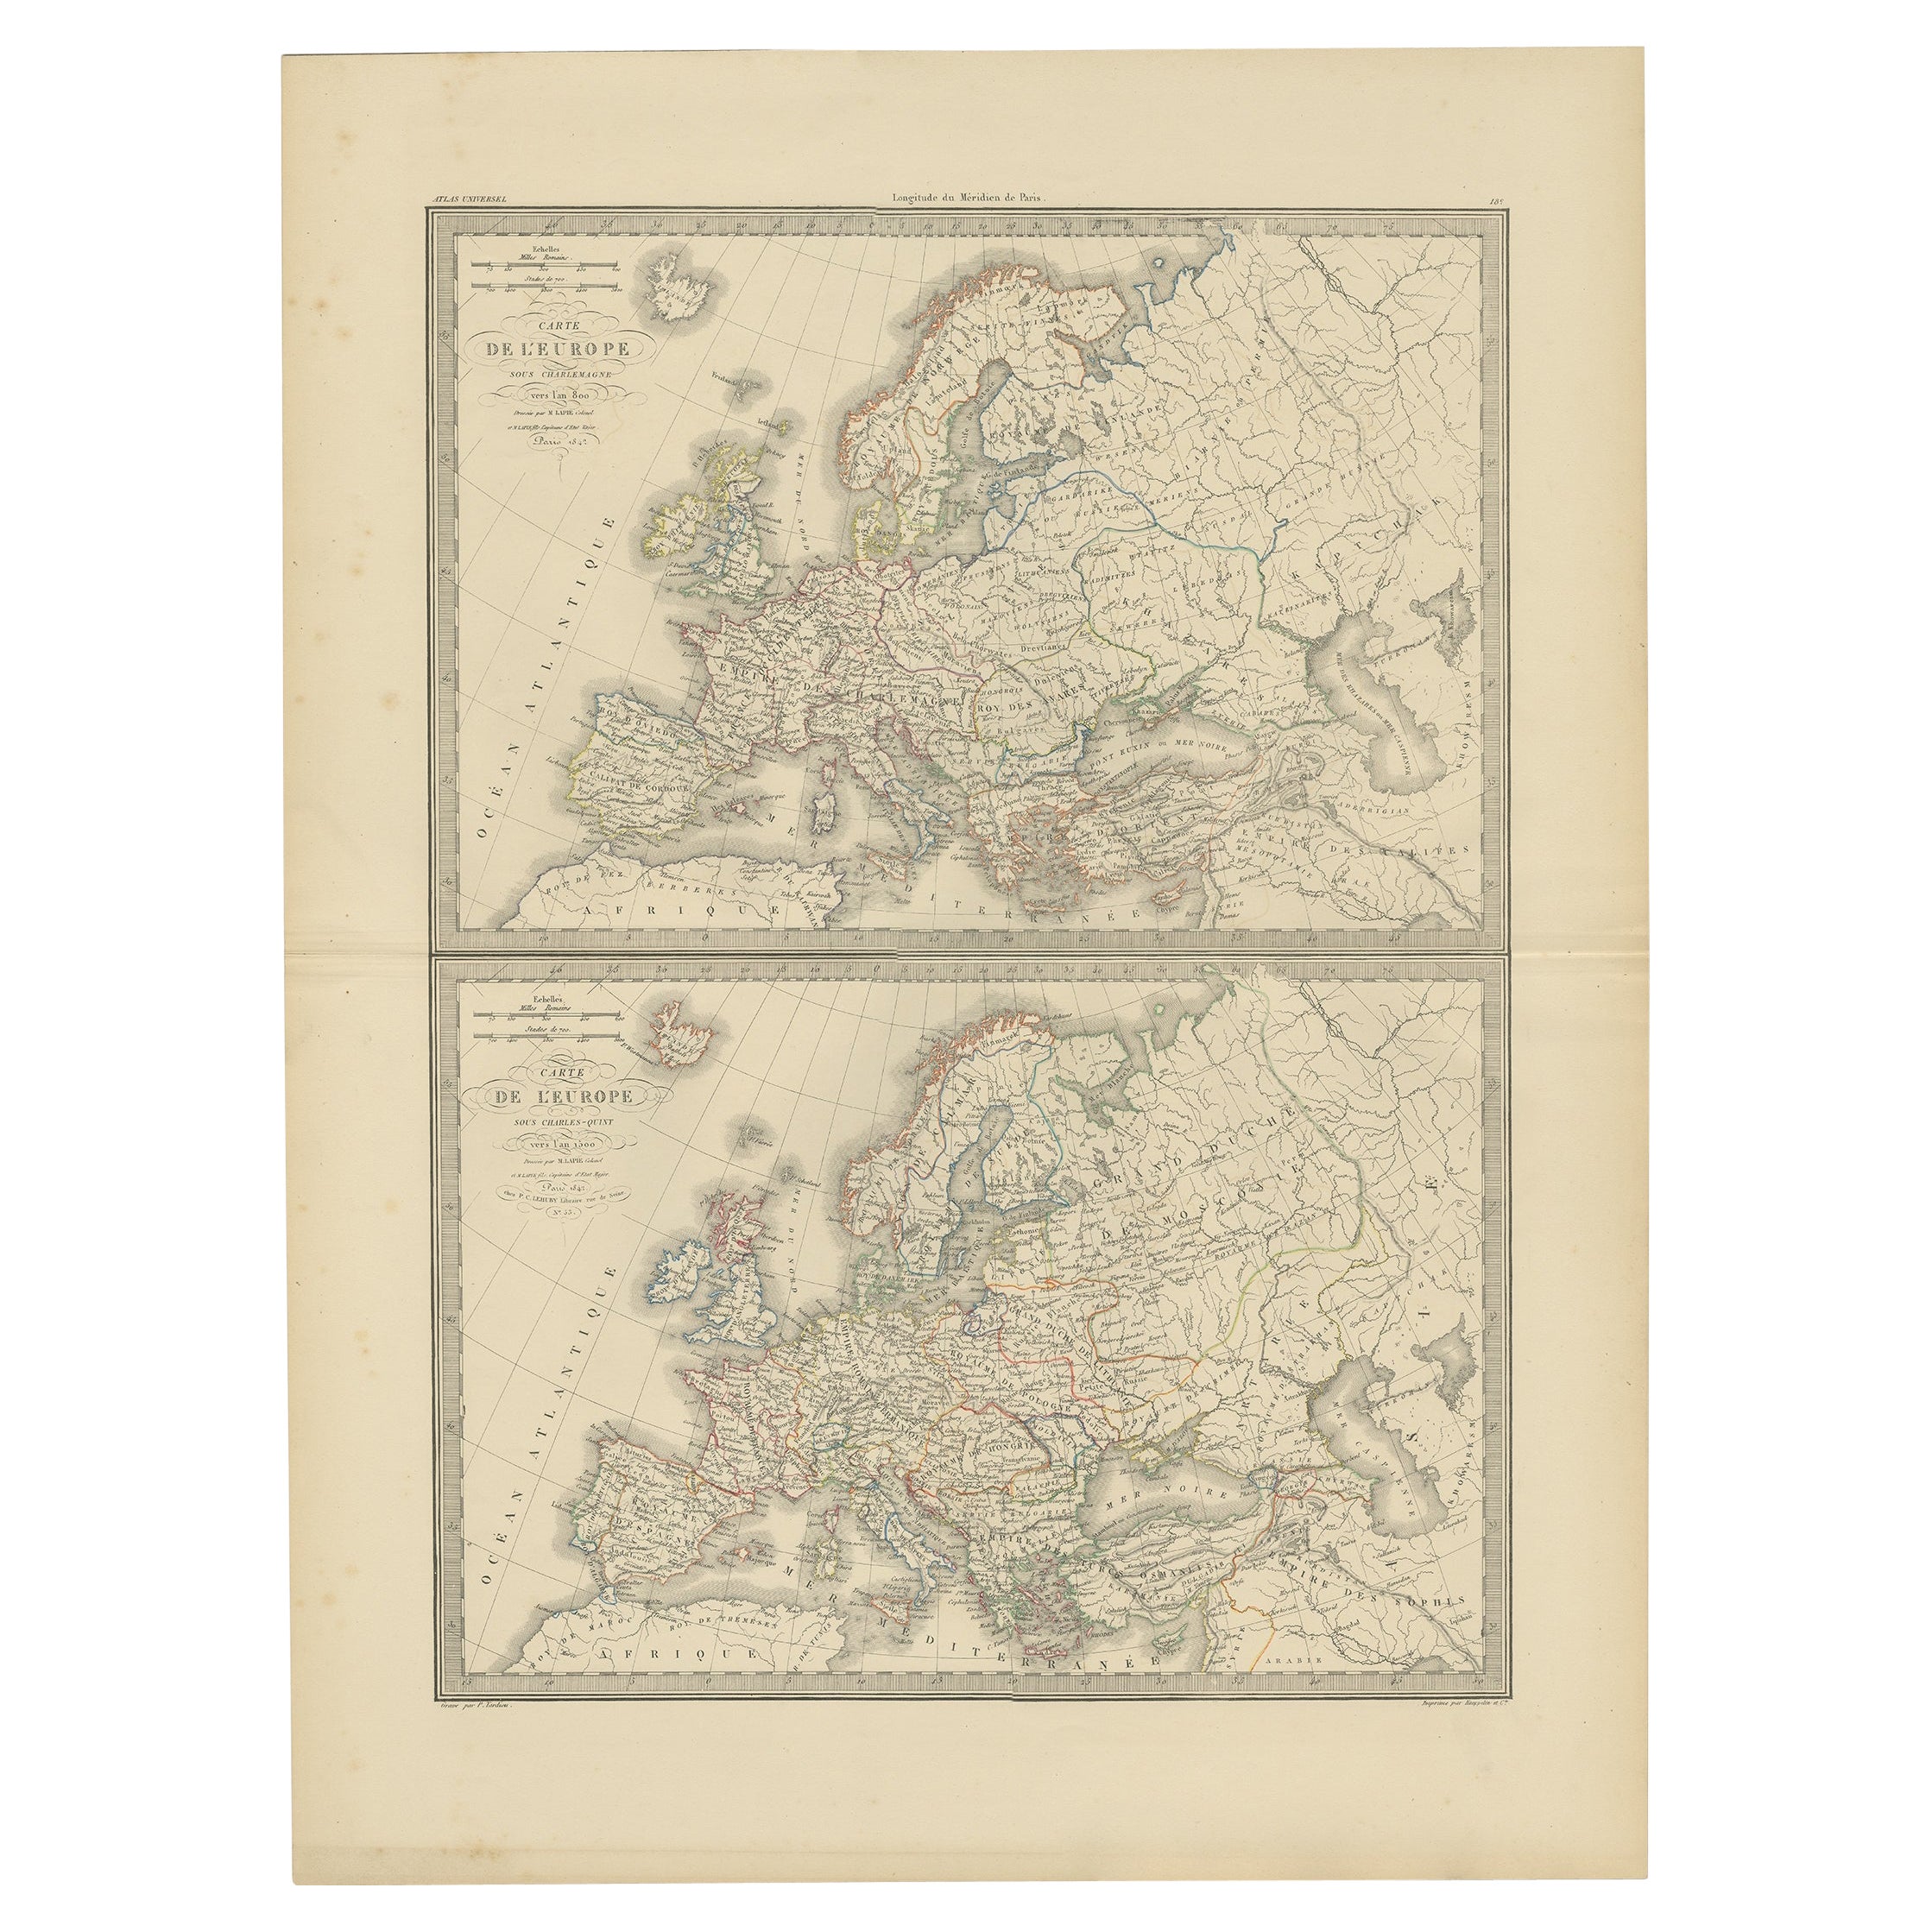 Carte ancienne d'Europe dans les années 800 et 1500, publiée en 1842